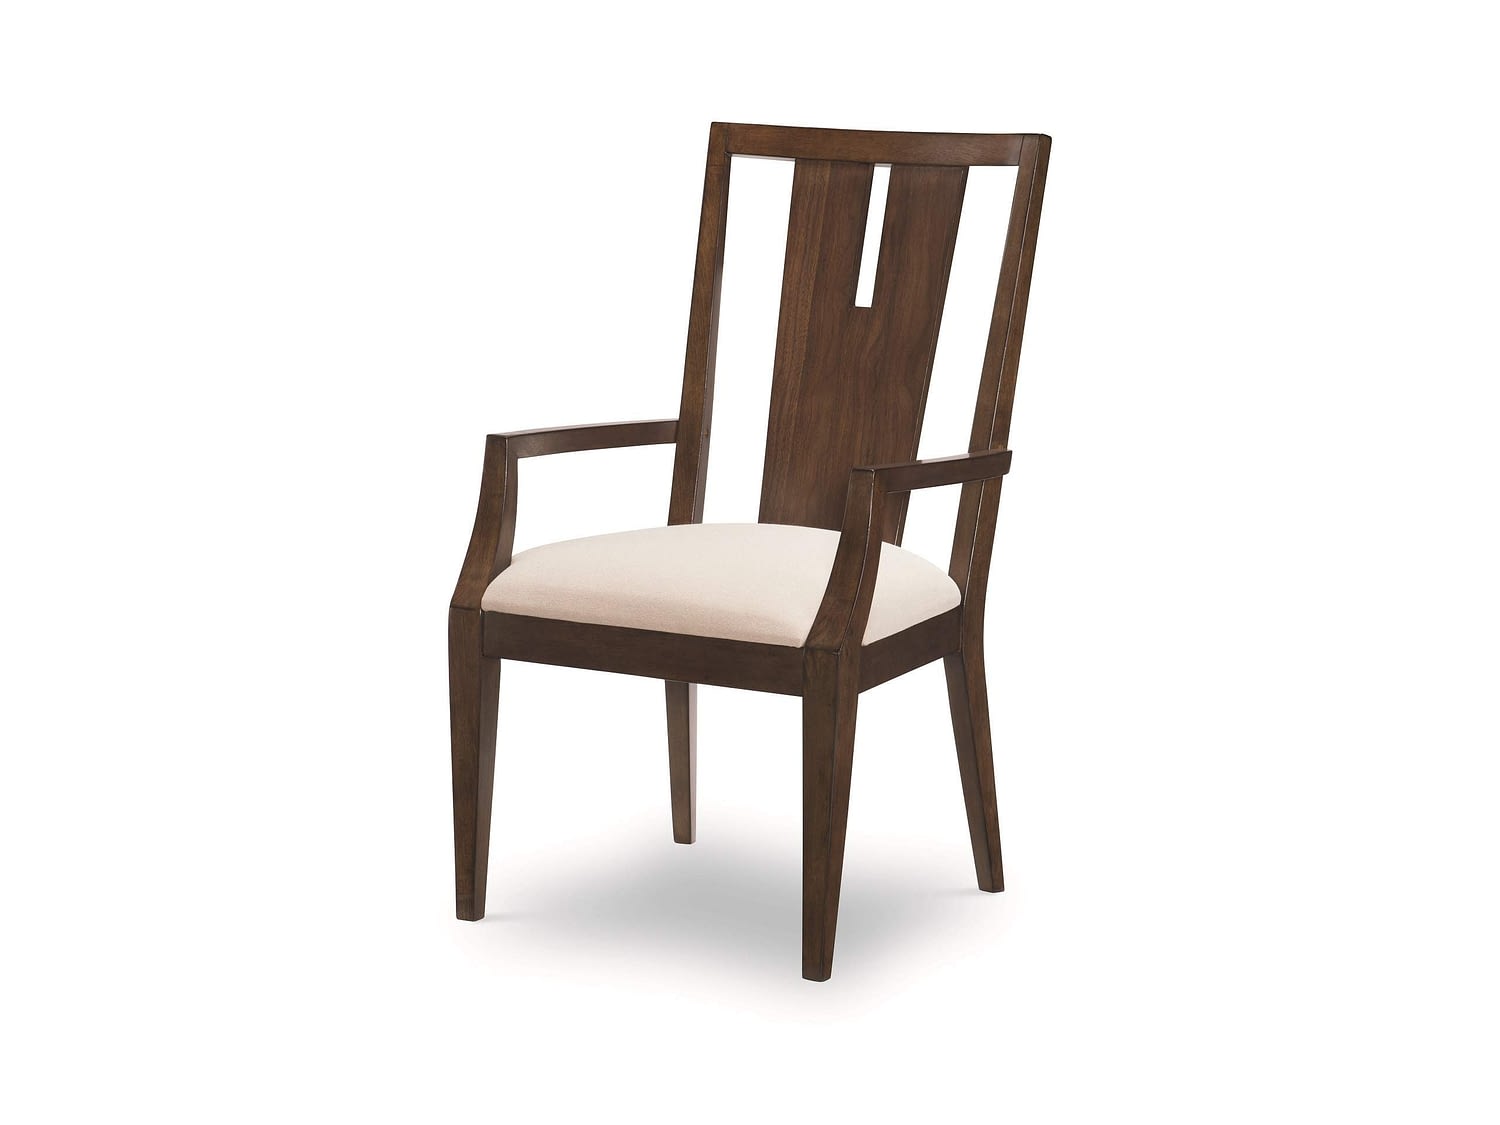 AUSTIN Arm Chair